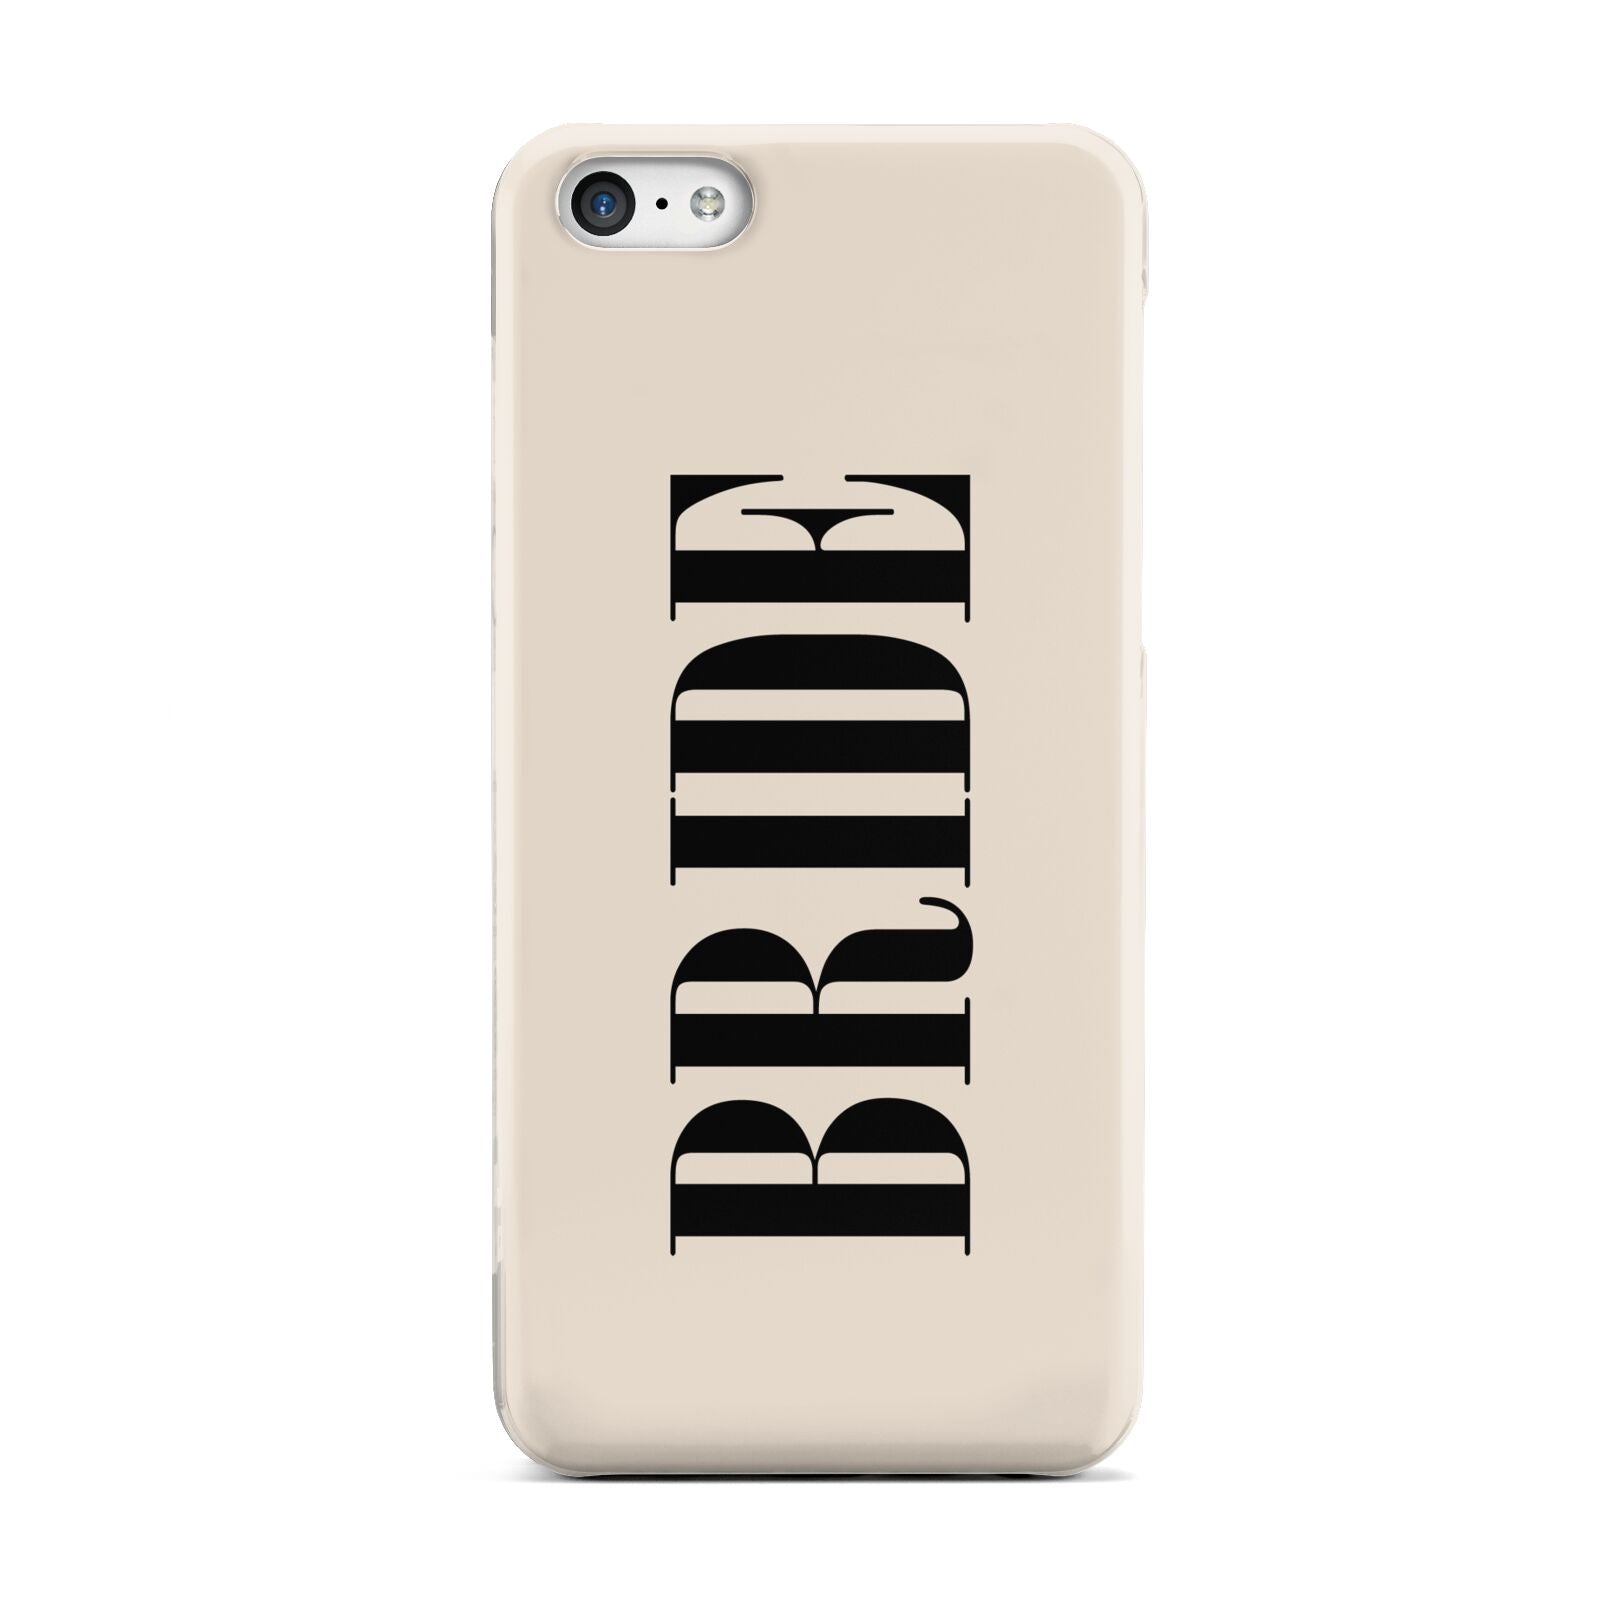 Future Bride Apple iPhone 5c Case